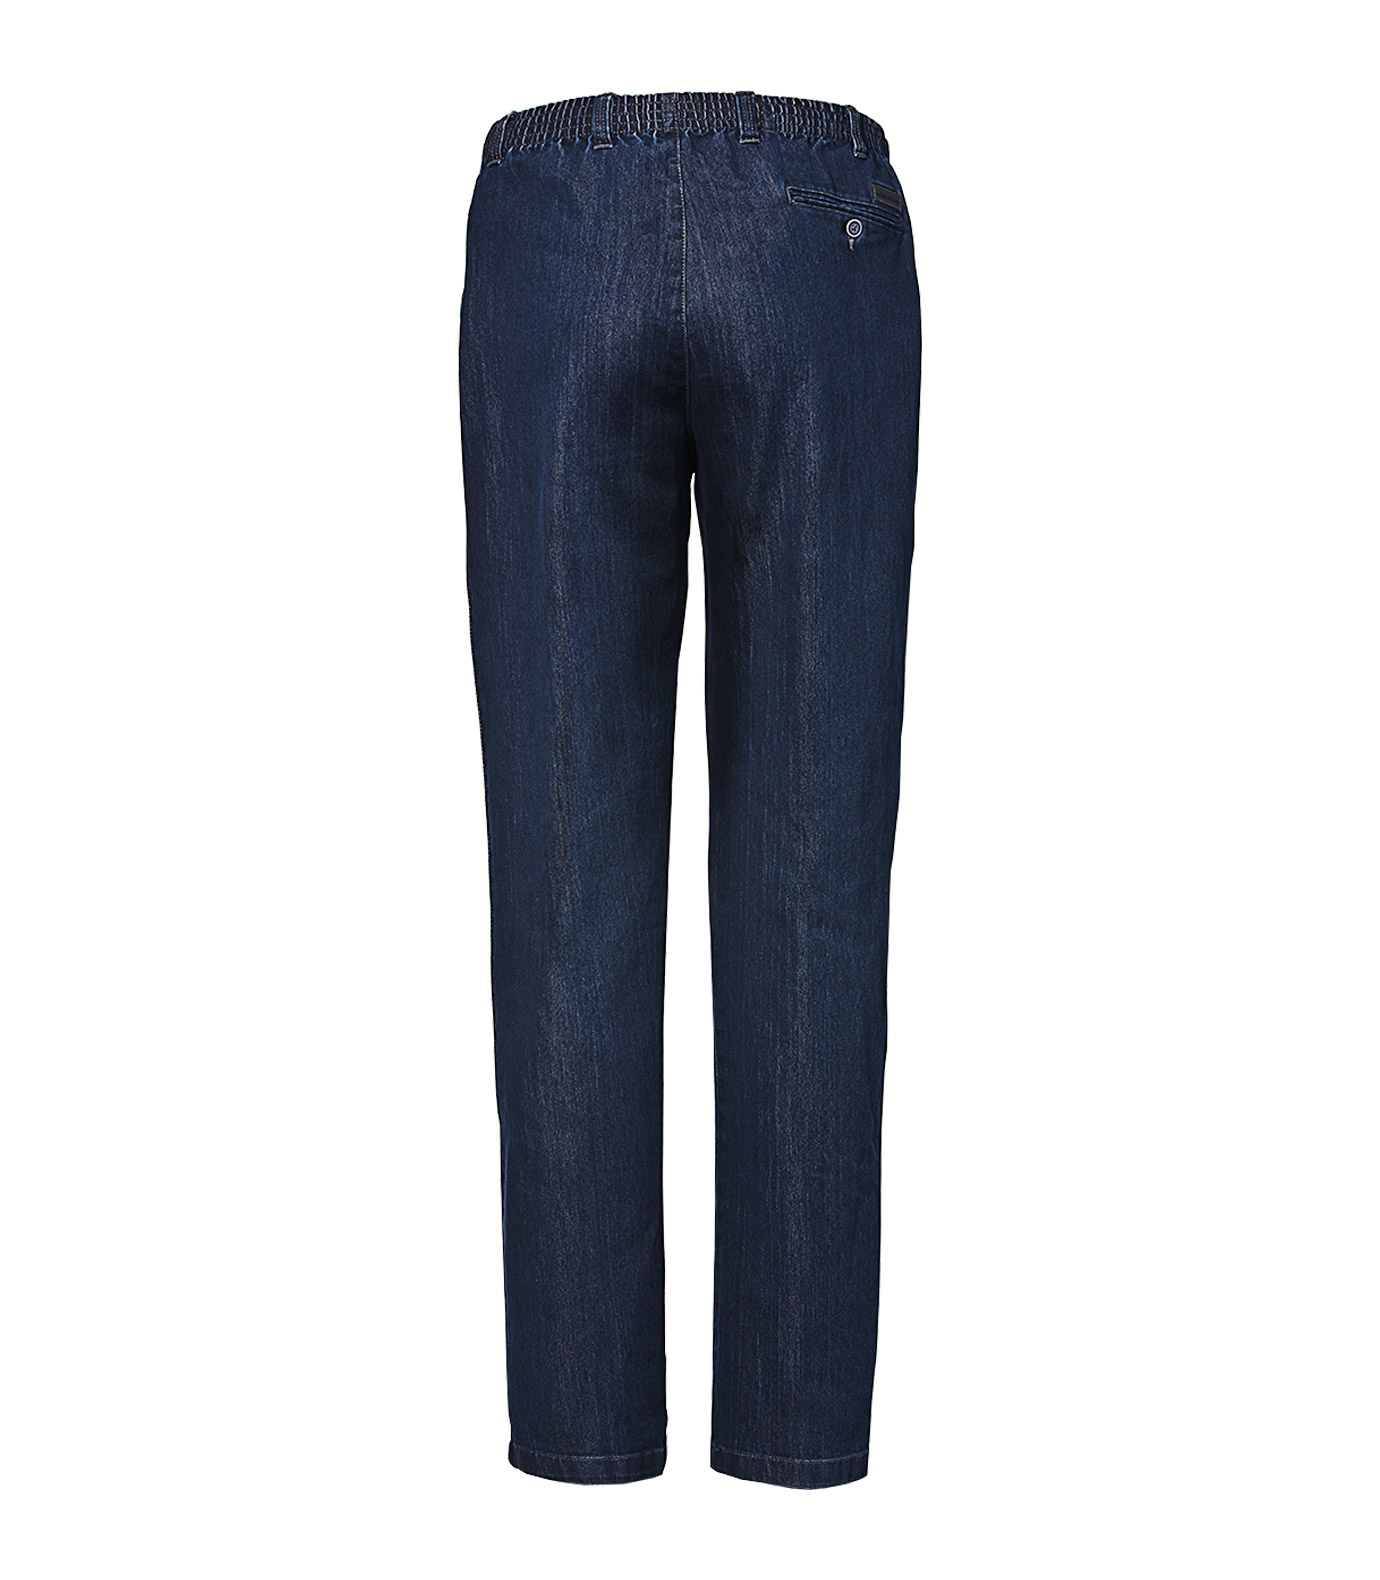 Grote maat elastische jeans broek blauw Maat 31 Biggymans - Herenkleding 2XL tot 14XL